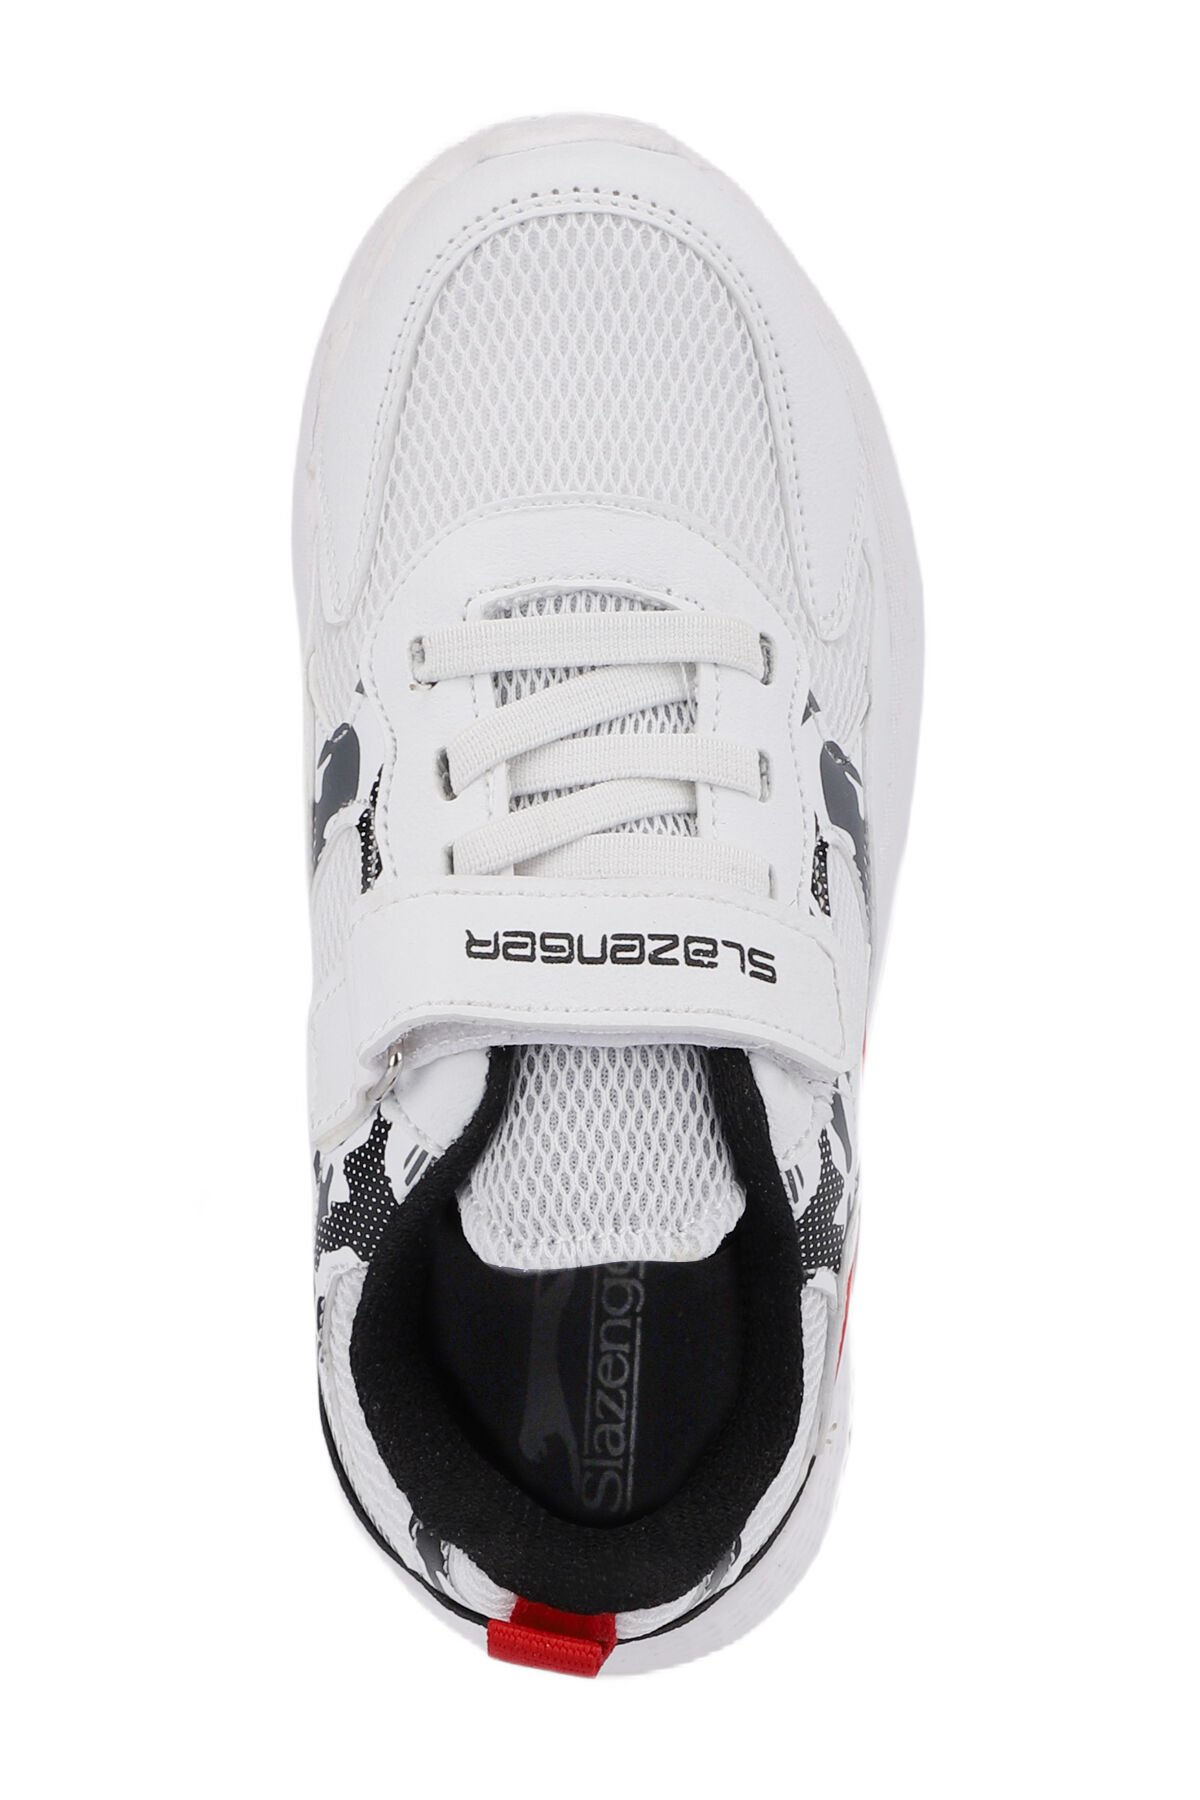 Slazenger KASHI KTN Sneaker Erkek Çocuk Ayakkabı Beyaz - Thumbnail